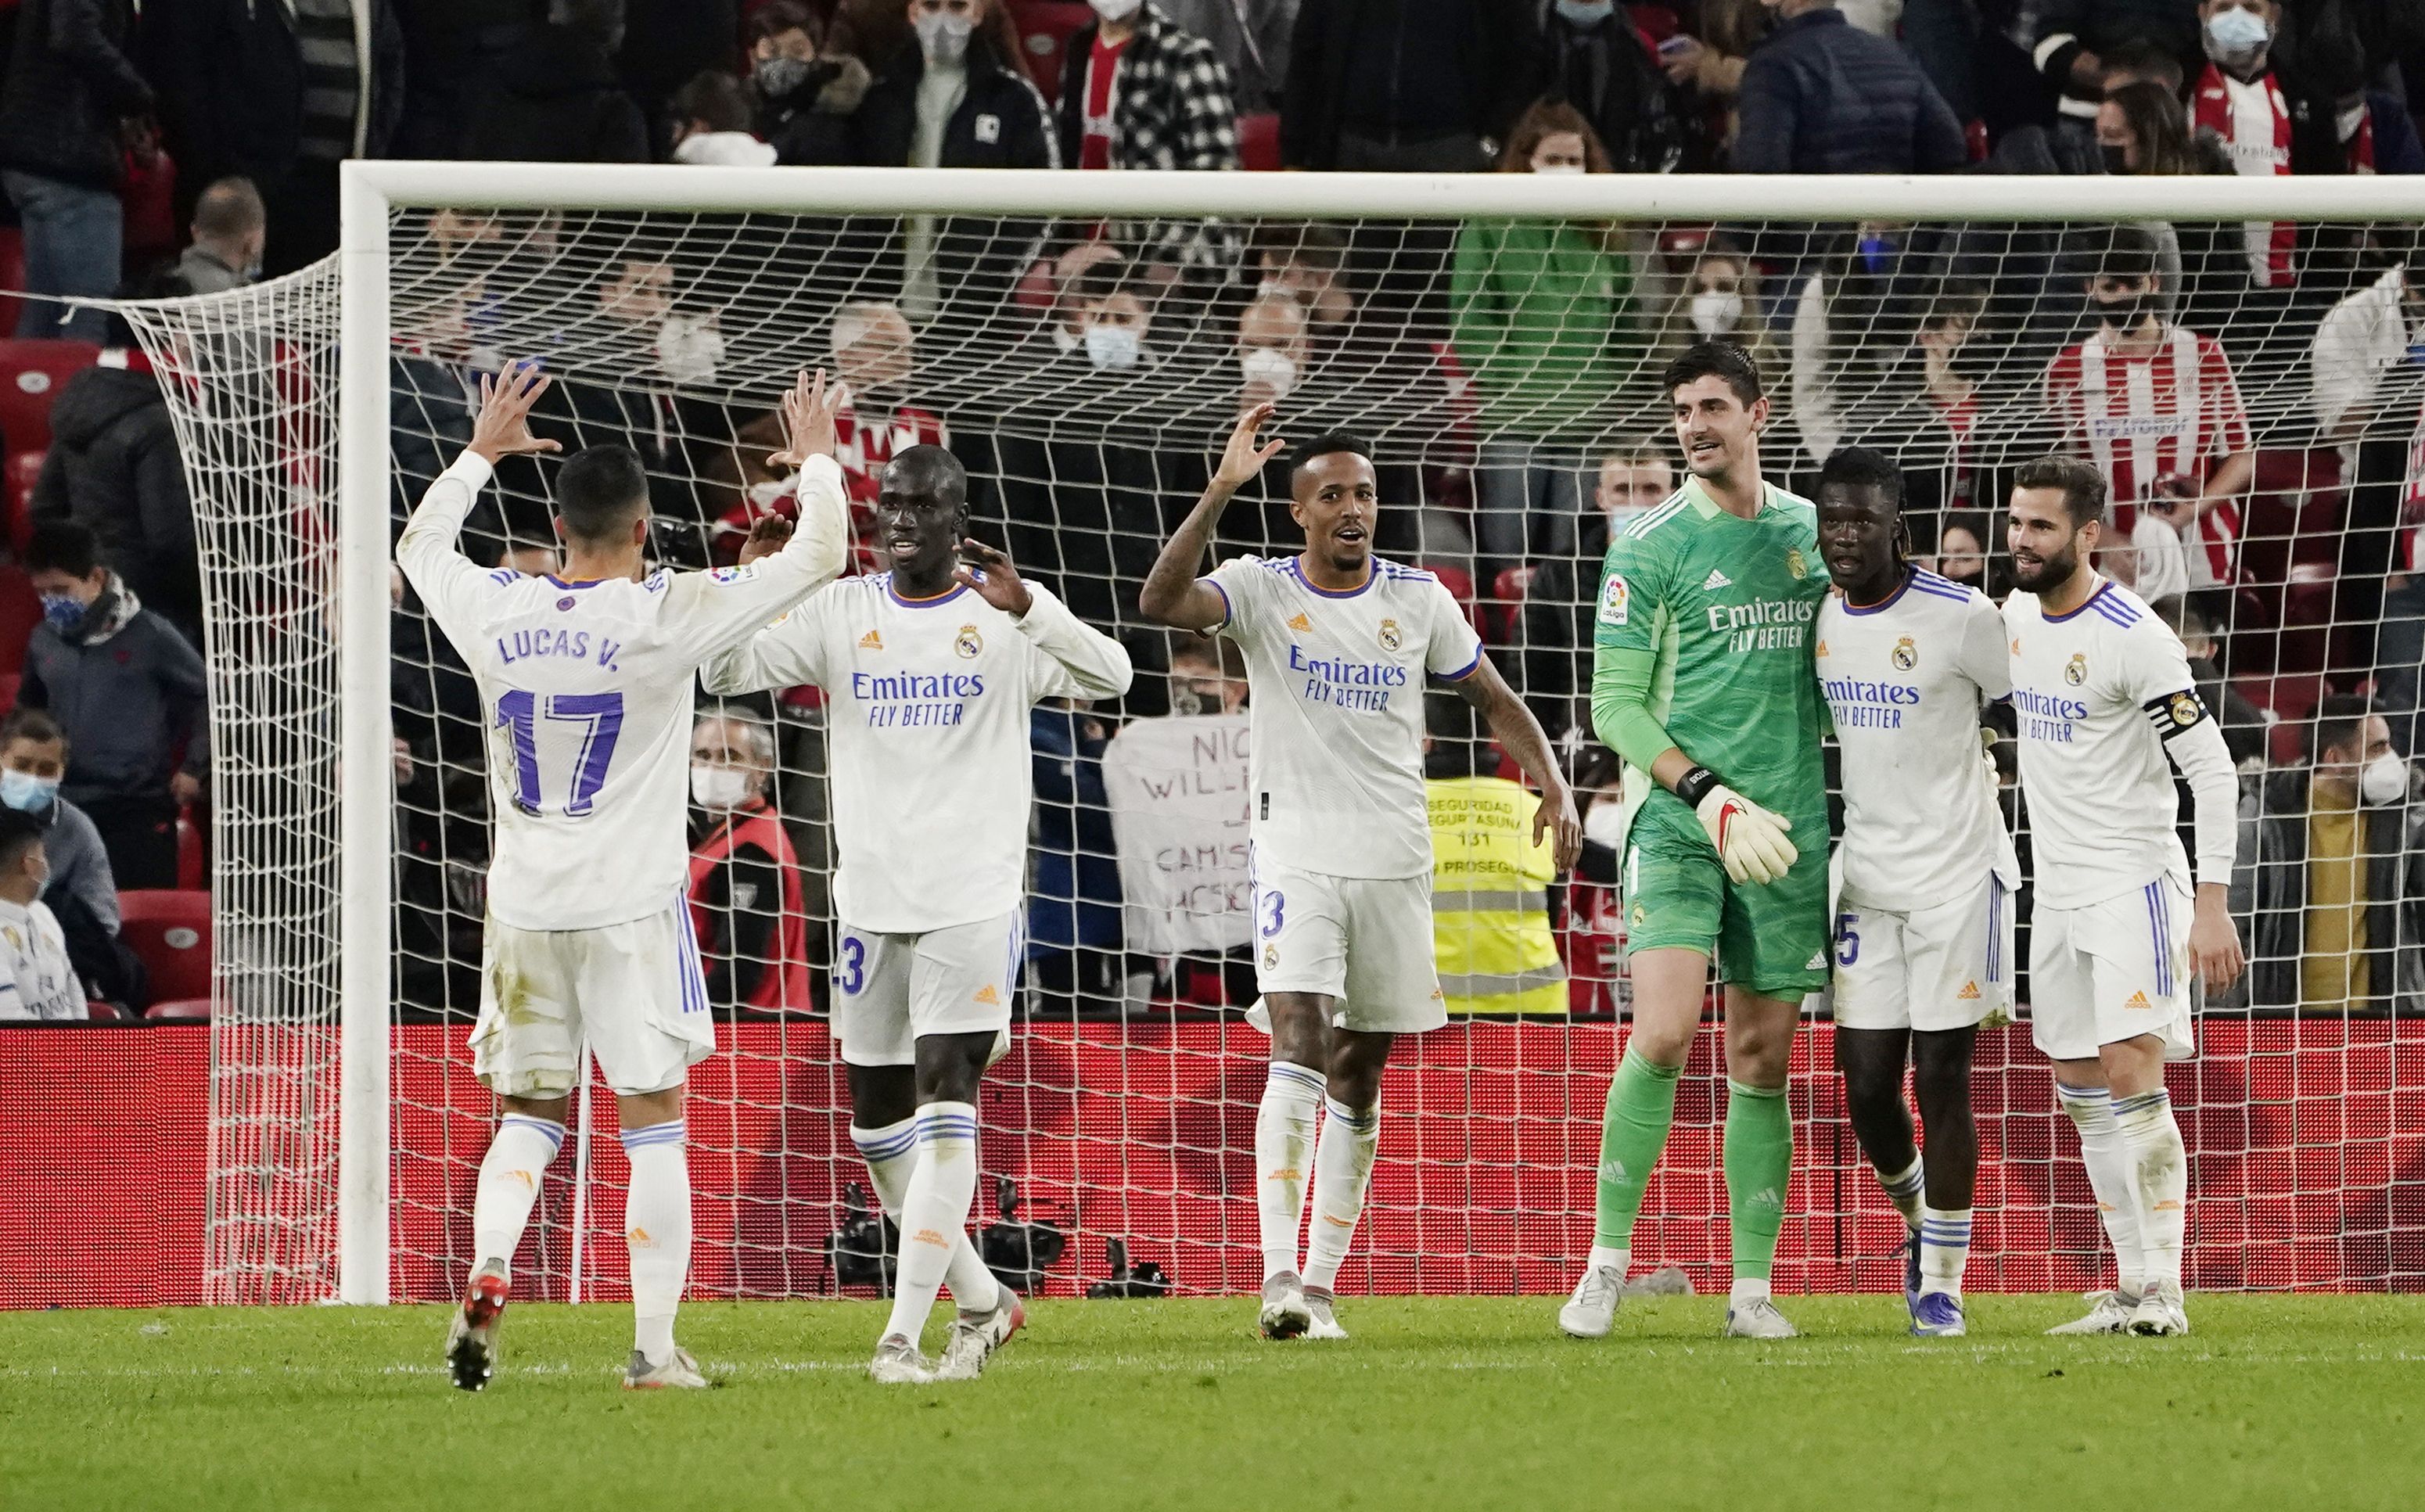 El Real Madrid sufrió varias bajas por COVID-19 este mes y ha pedido a sus jugadores que "extremen los cuidados" (Foto: REUTERS)